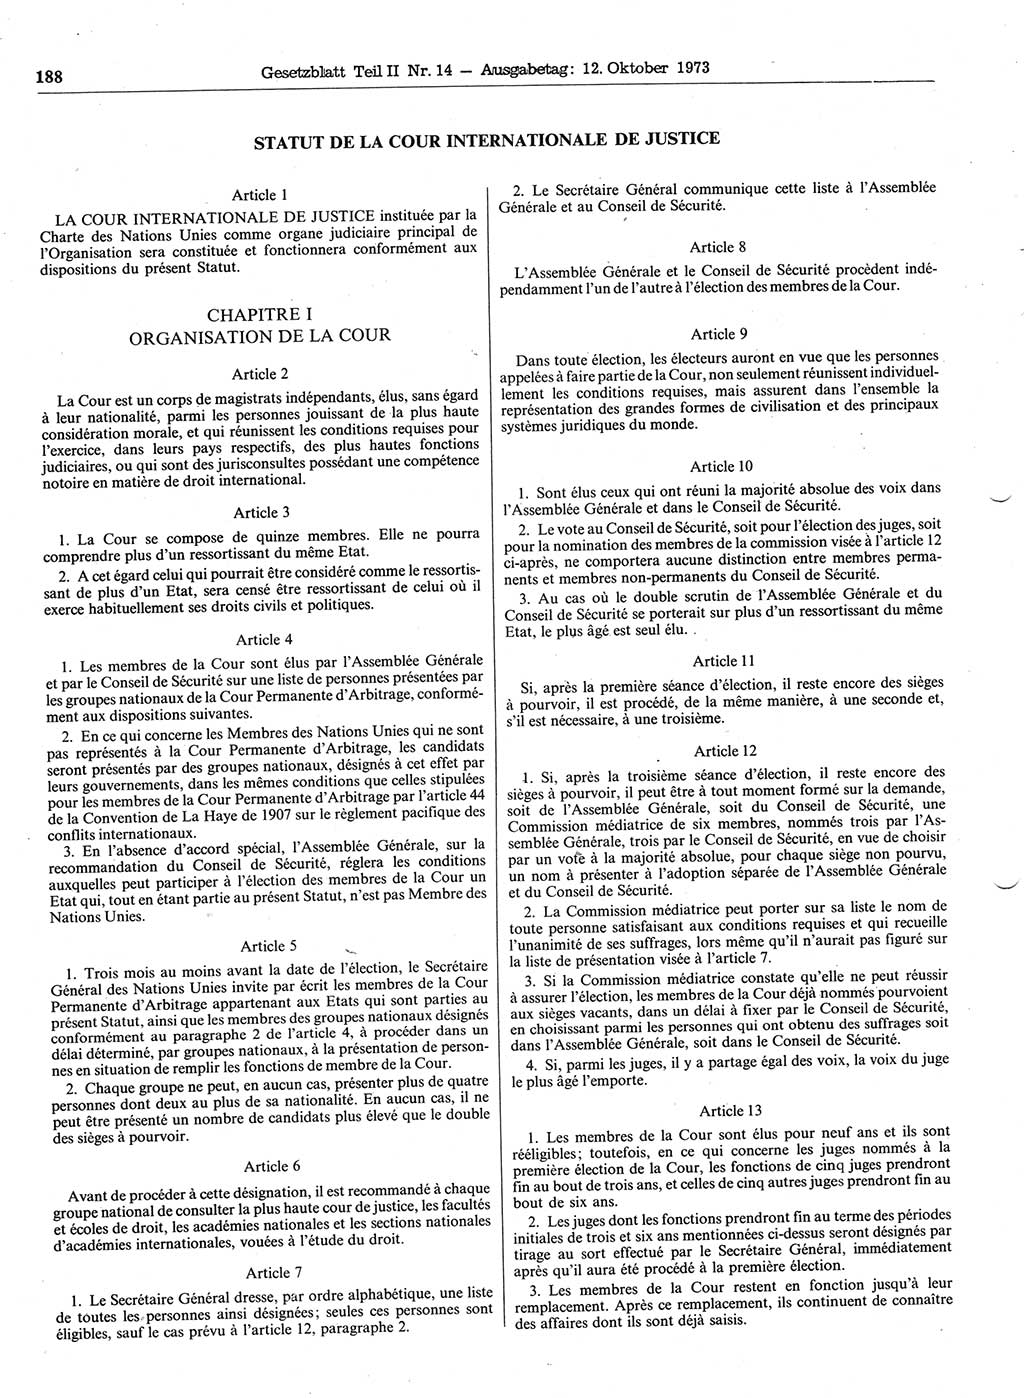 Gesetzblatt (GBl.) der Deutschen Demokratischen Republik (DDR) Teil ⅠⅠ 1973, Seite 188 (GBl. DDR ⅠⅠ 1973, S. 188)